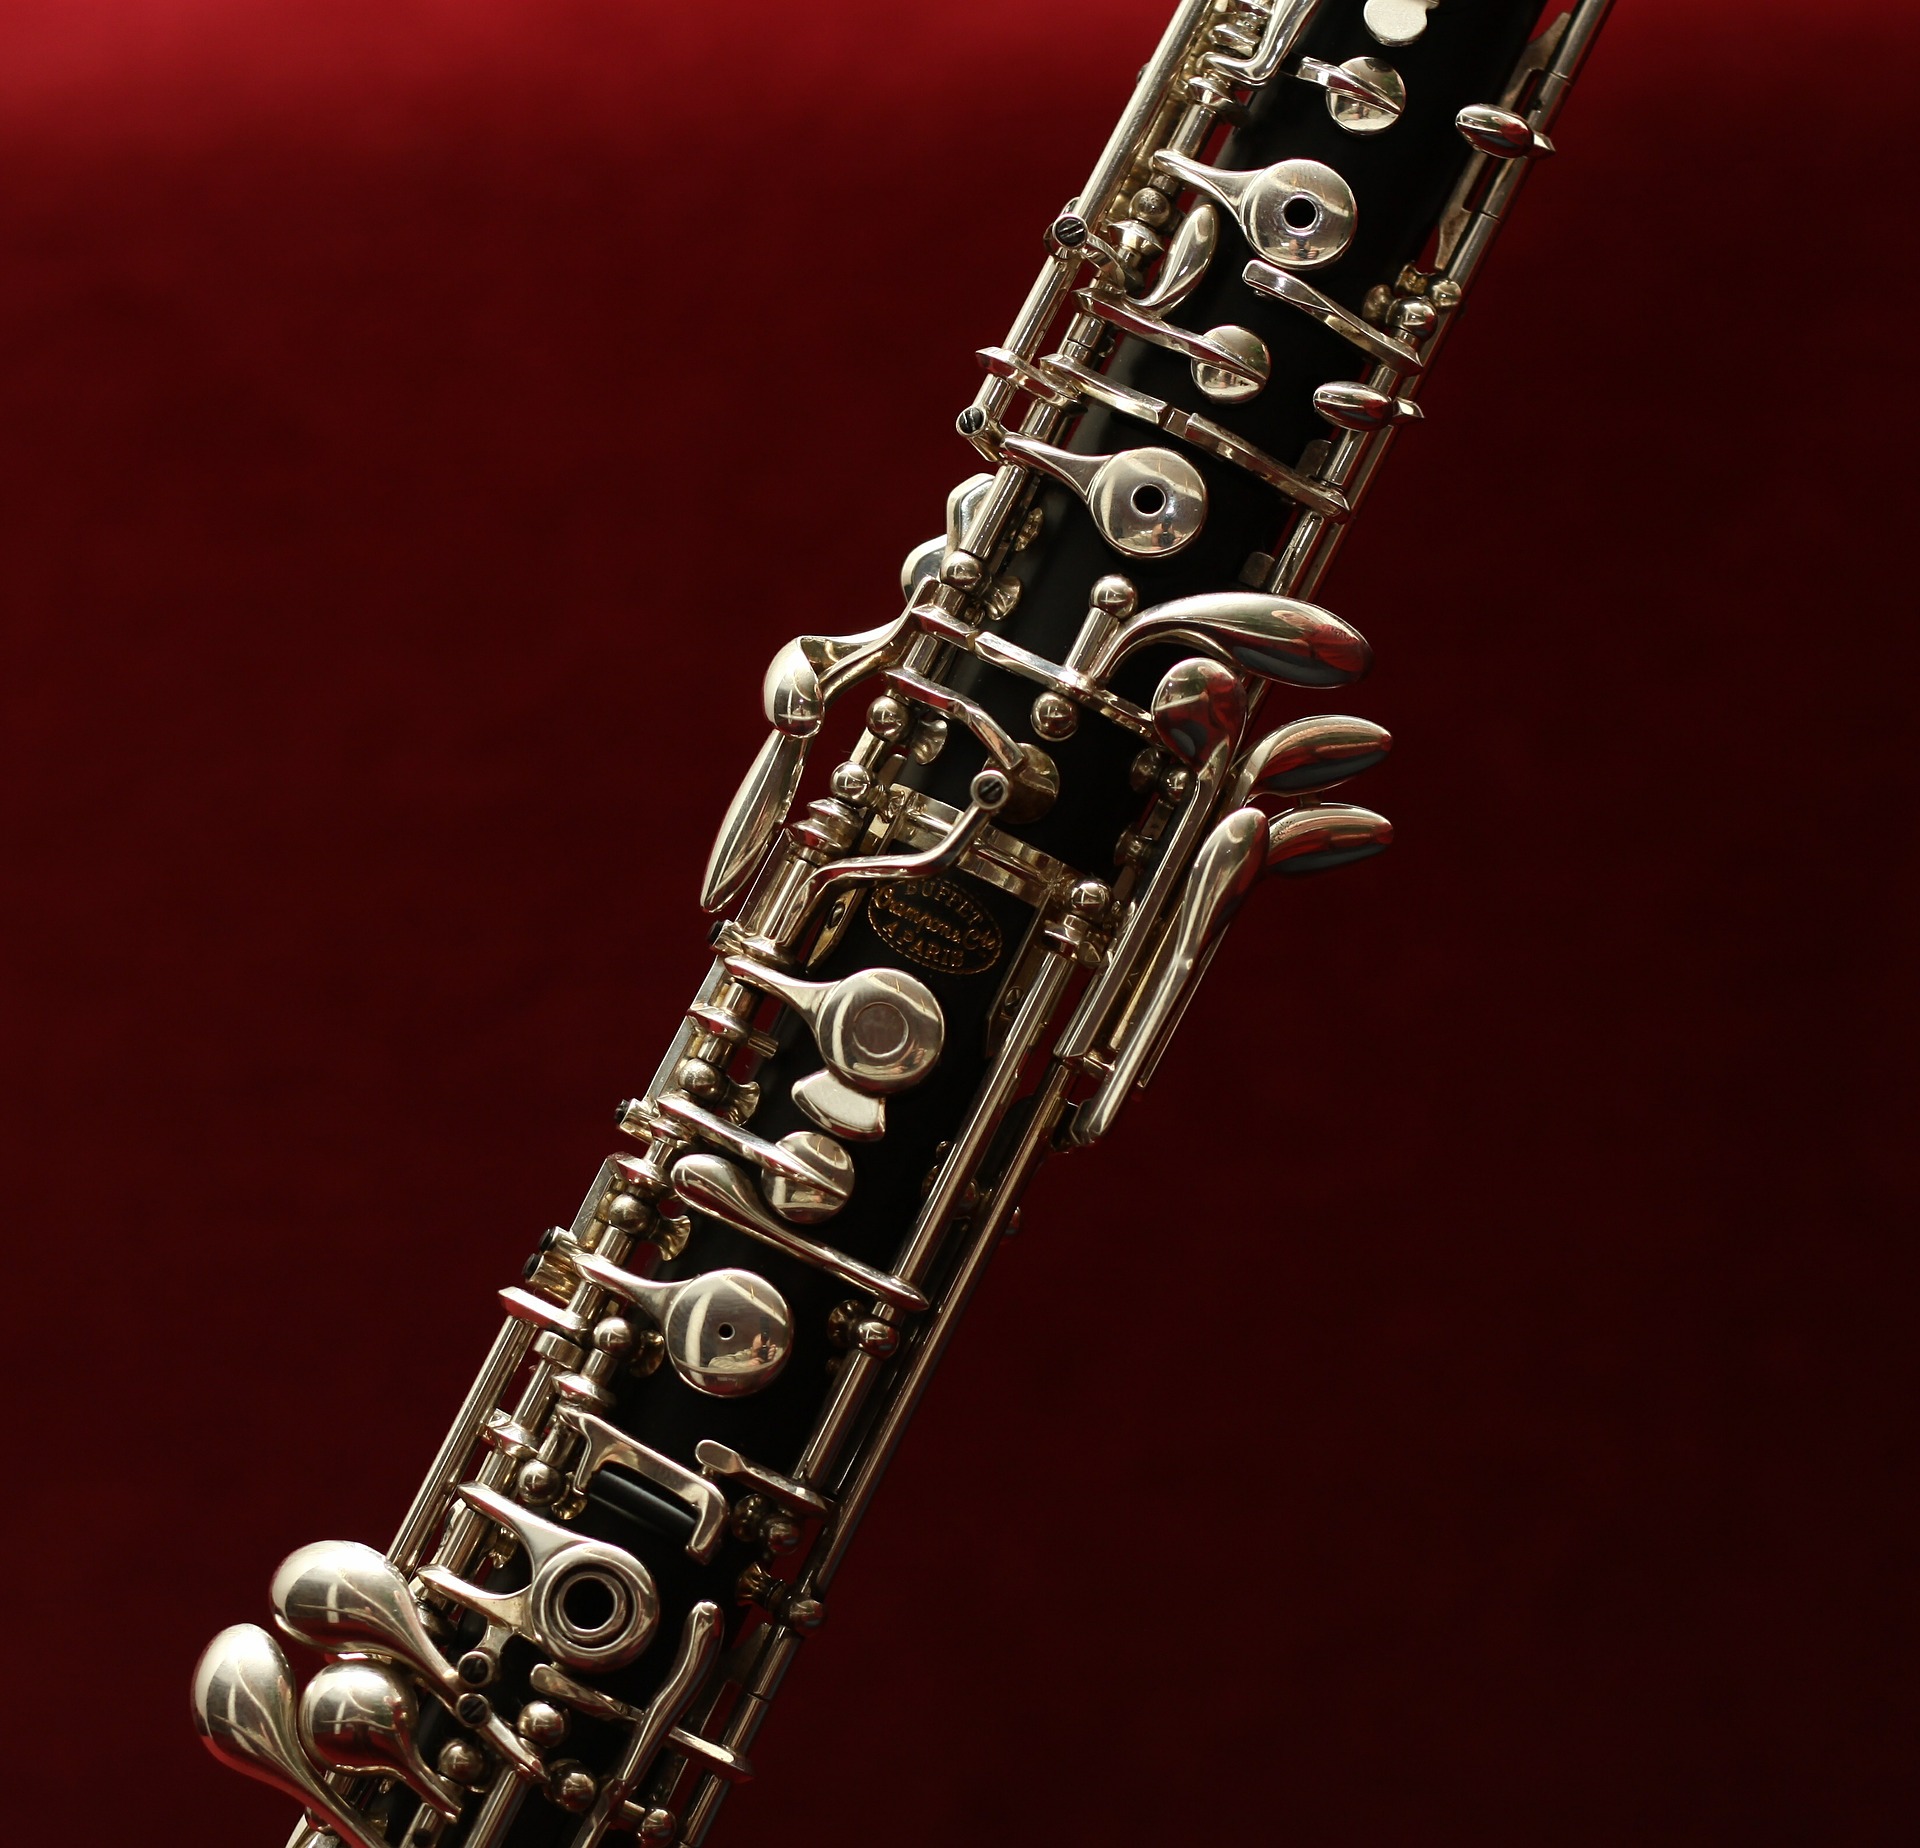 oboe-g67ff7a62f_1920 (c) Pixabay.com